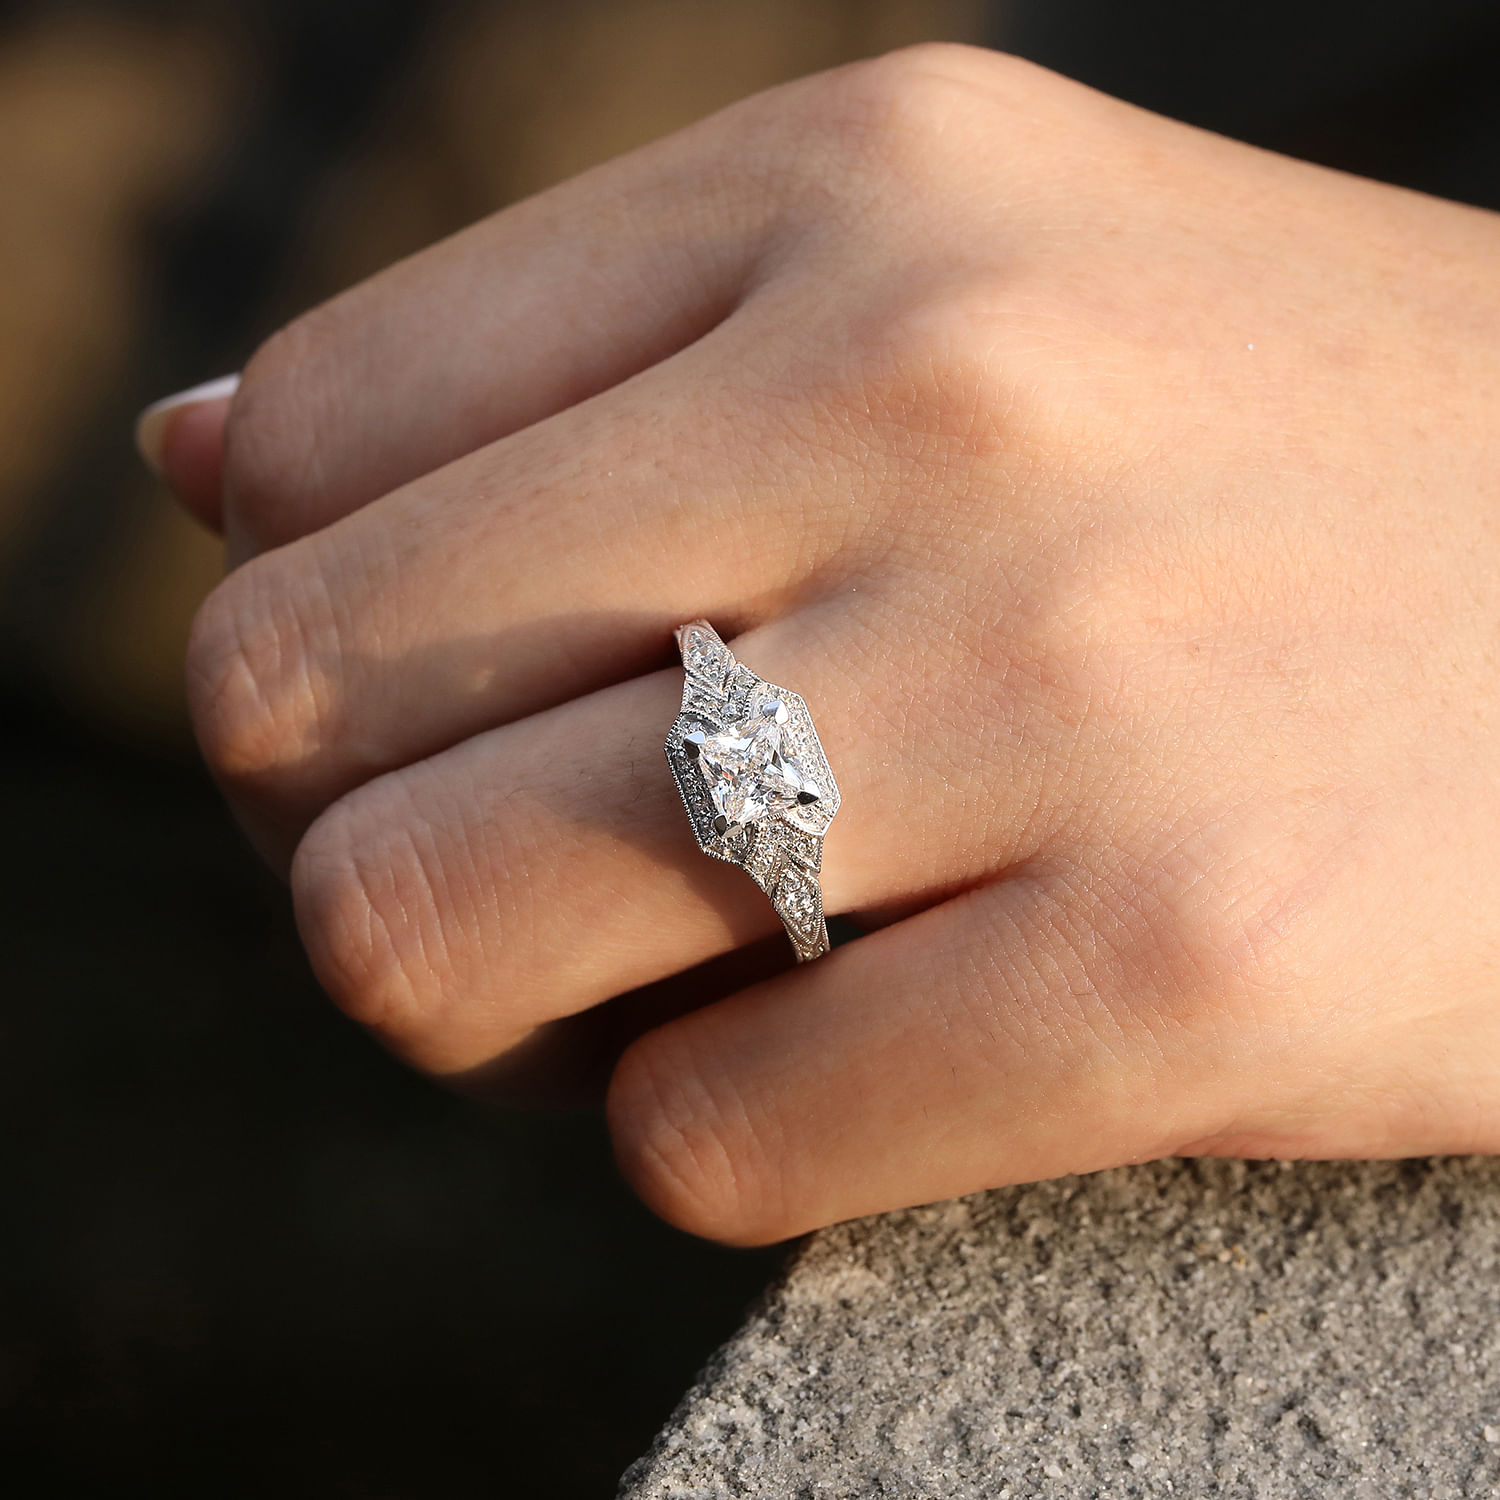 Unique 14K White Gold Art Deco Princess Cut Halo Diamond Engagement Ring